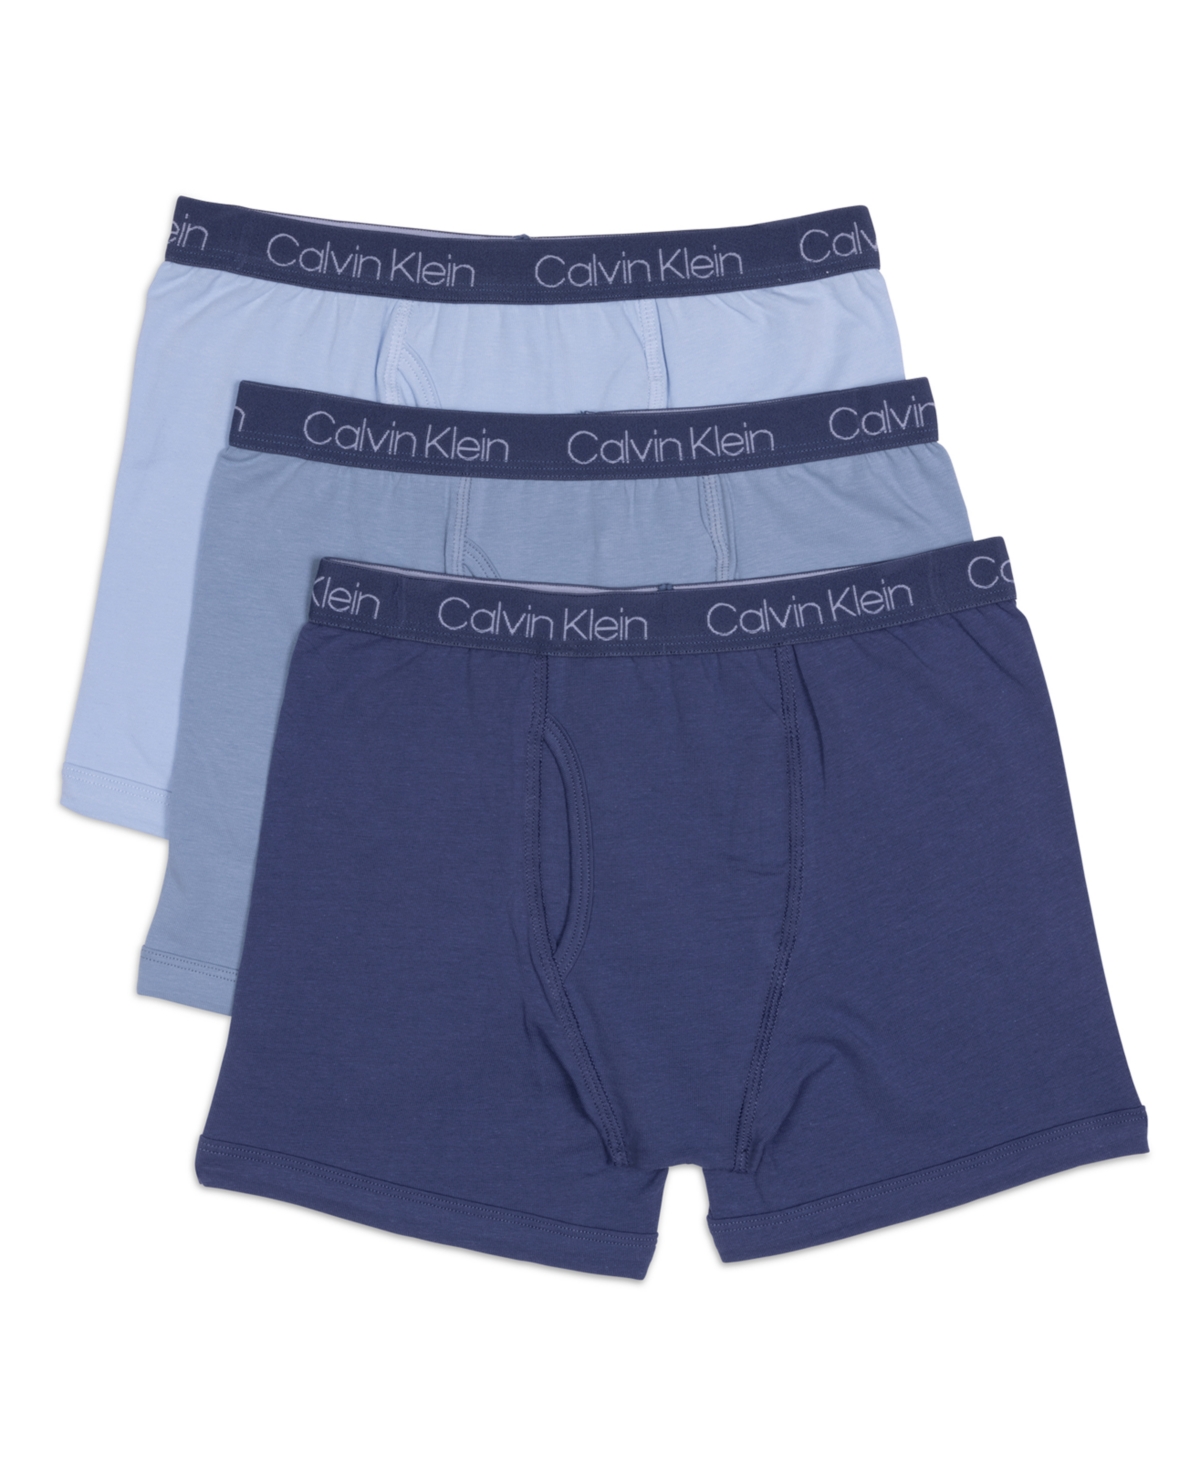 Calvin Klein Kids' Big Boys Stretch Boxer Brief, Pack Of 3 In Blue Indigo